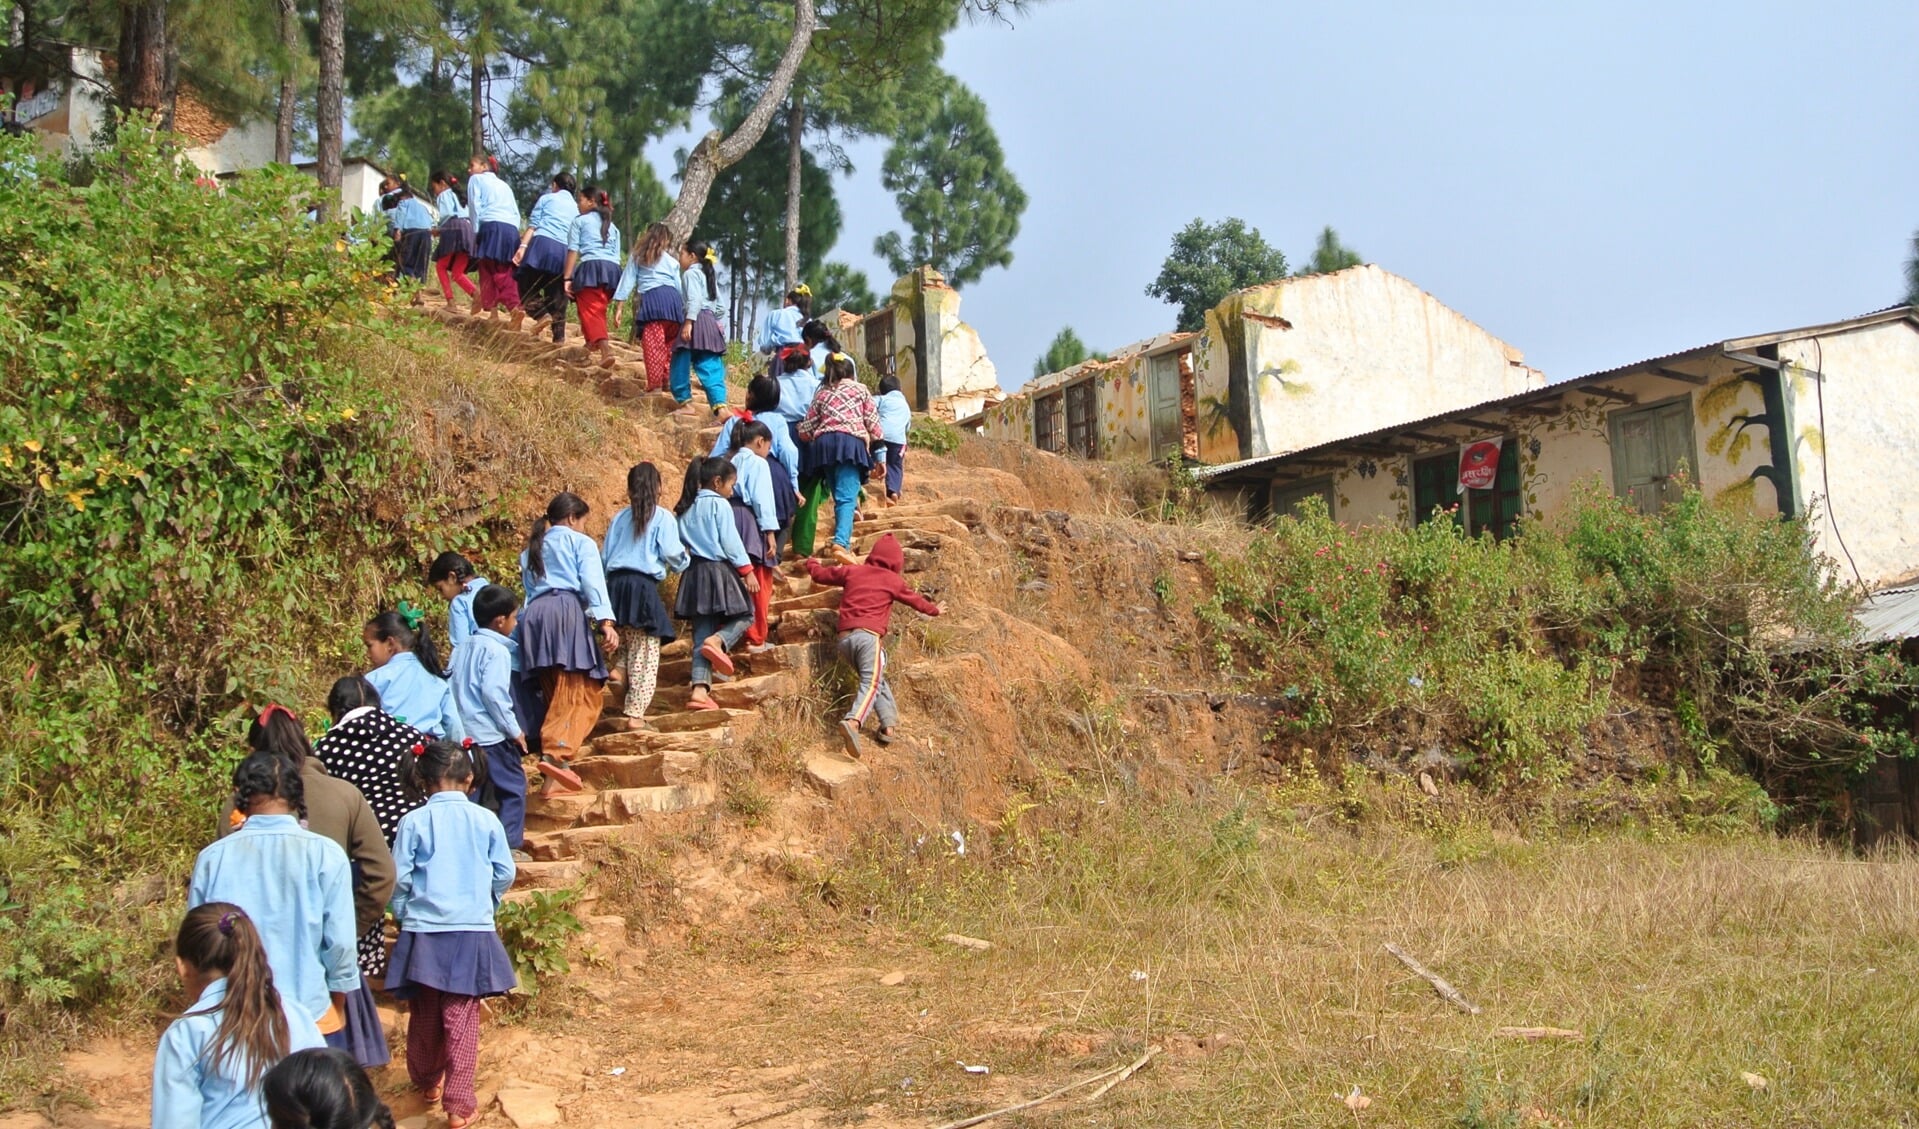 De leerlingen op weg naar hun noodlokalen met op de achtergrond hun door de aardbeving verwoeste school